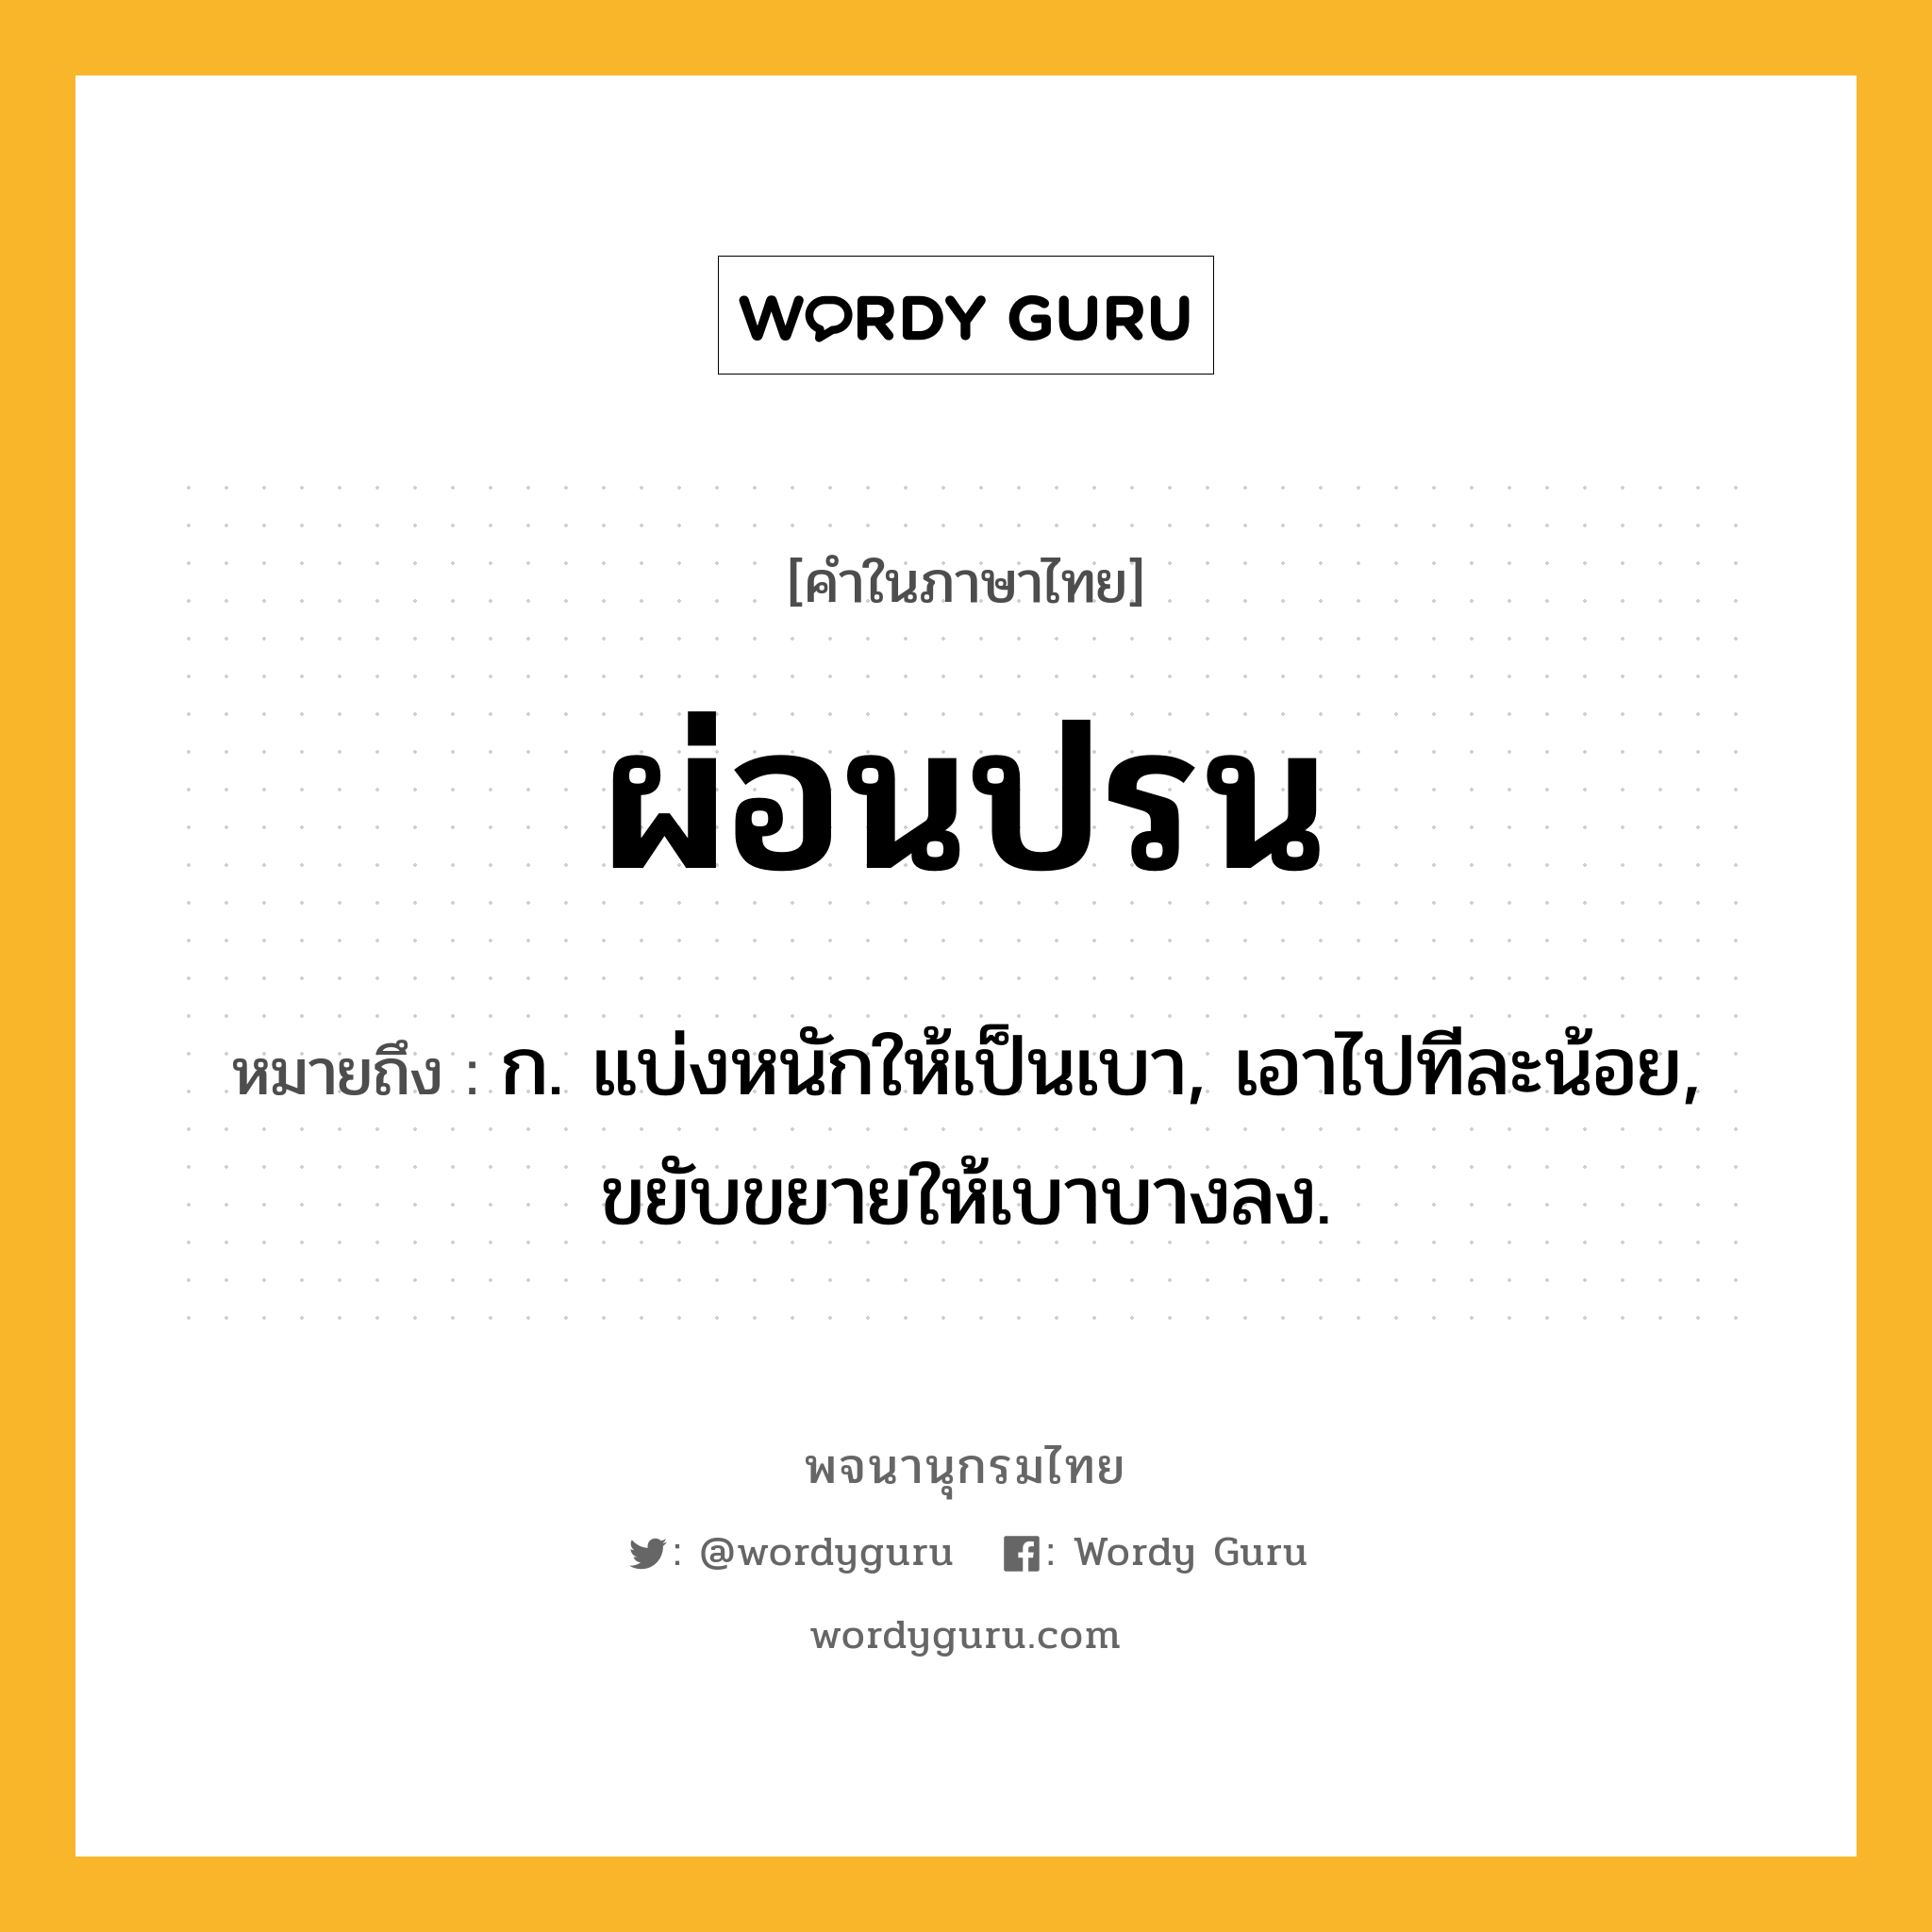 ผ่อนปรน ความหมาย หมายถึงอะไร?, คำในภาษาไทย ผ่อนปรน หมายถึง ก. แบ่งหนักให้เป็นเบา, เอาไปทีละน้อย, ขยับขยายให้เบาบางลง.